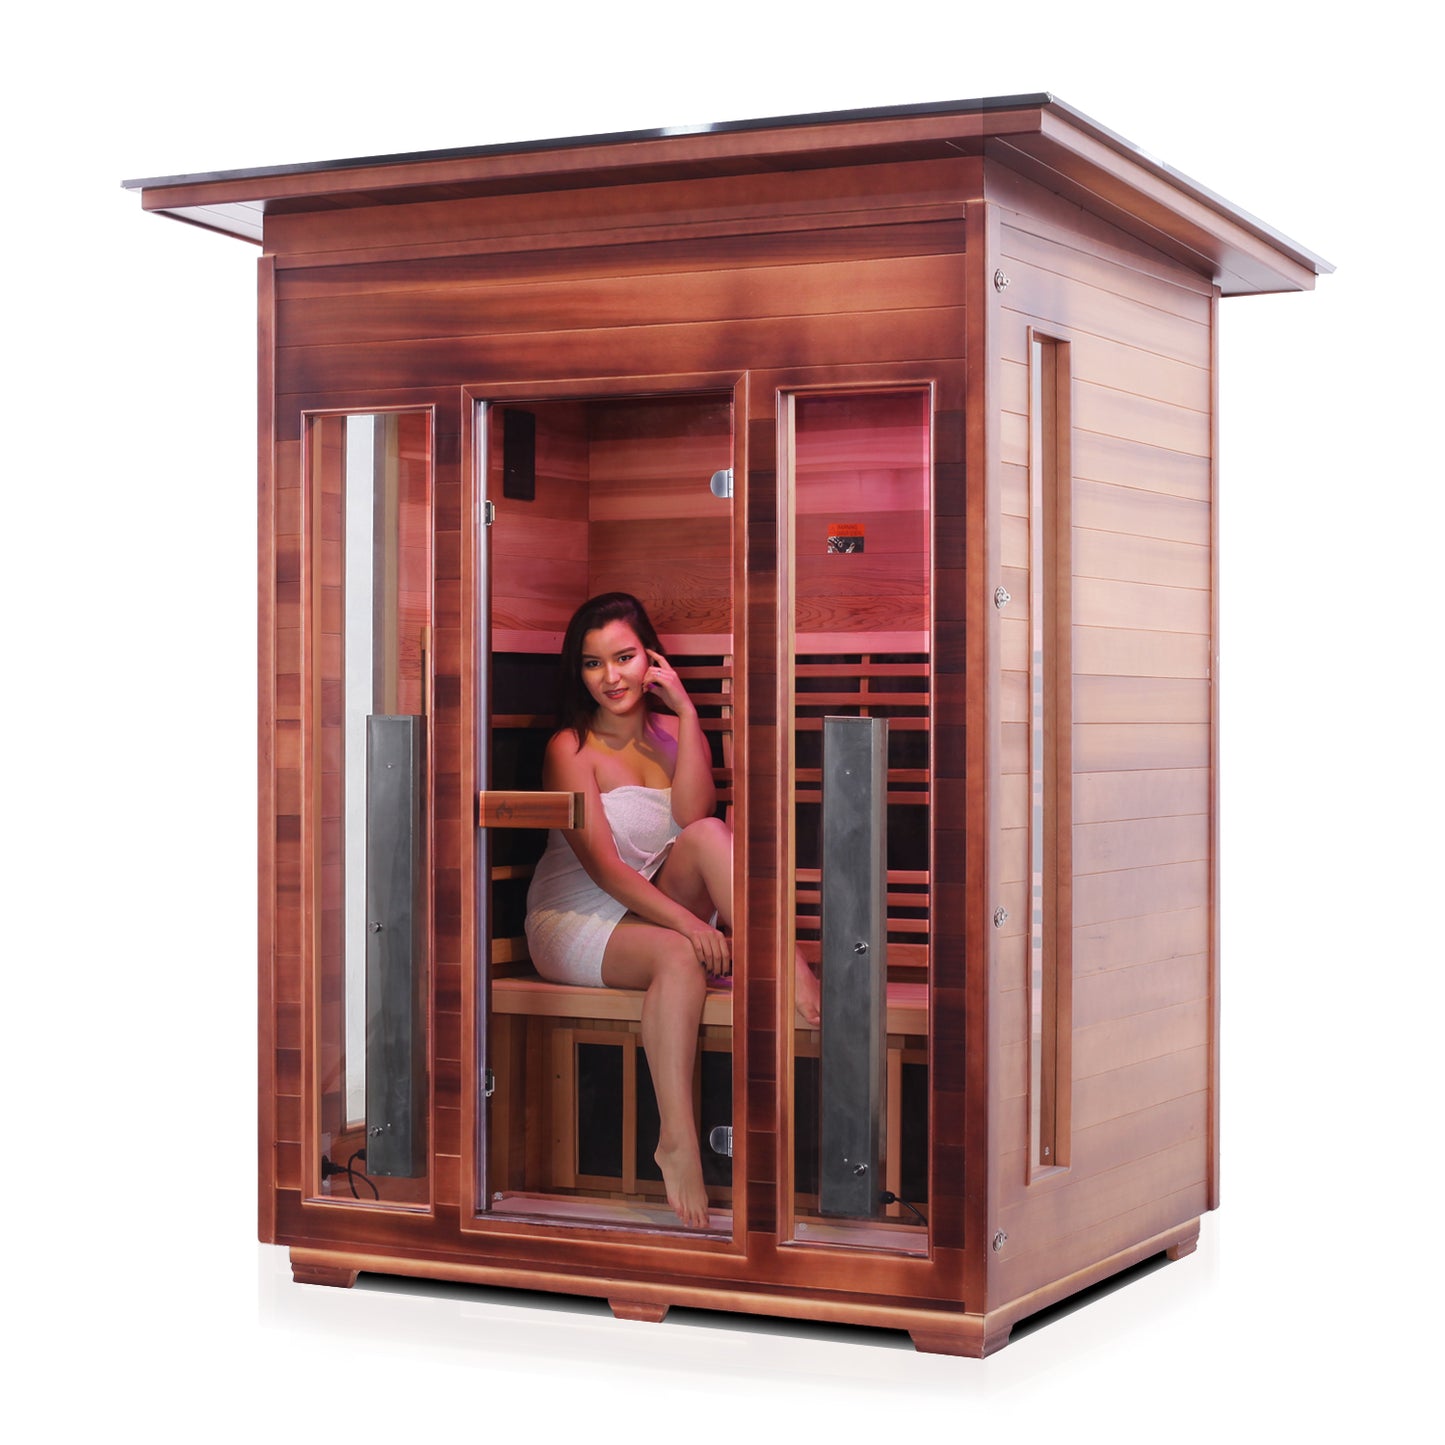 Rustic 3 Outdoor Infrared Sauna